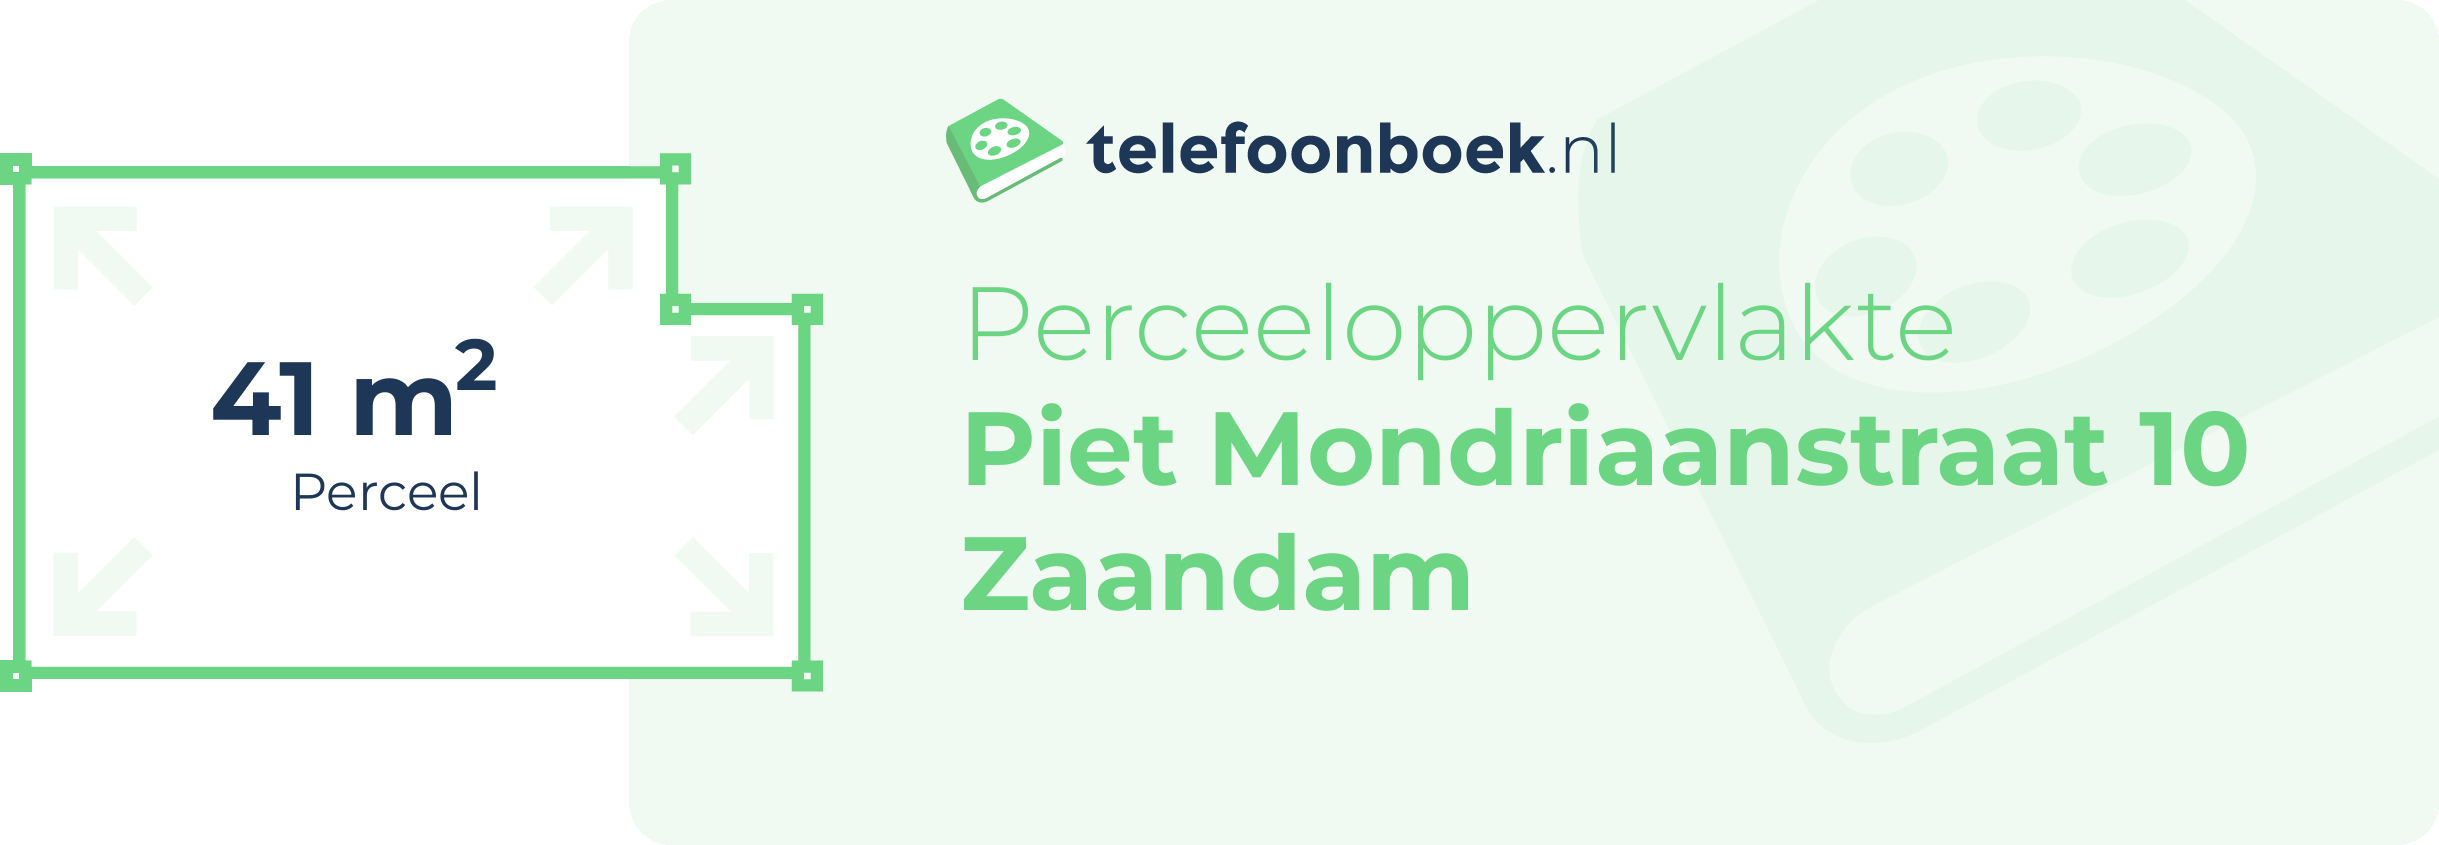 Perceeloppervlakte Piet Mondriaanstraat 10 Zaandam